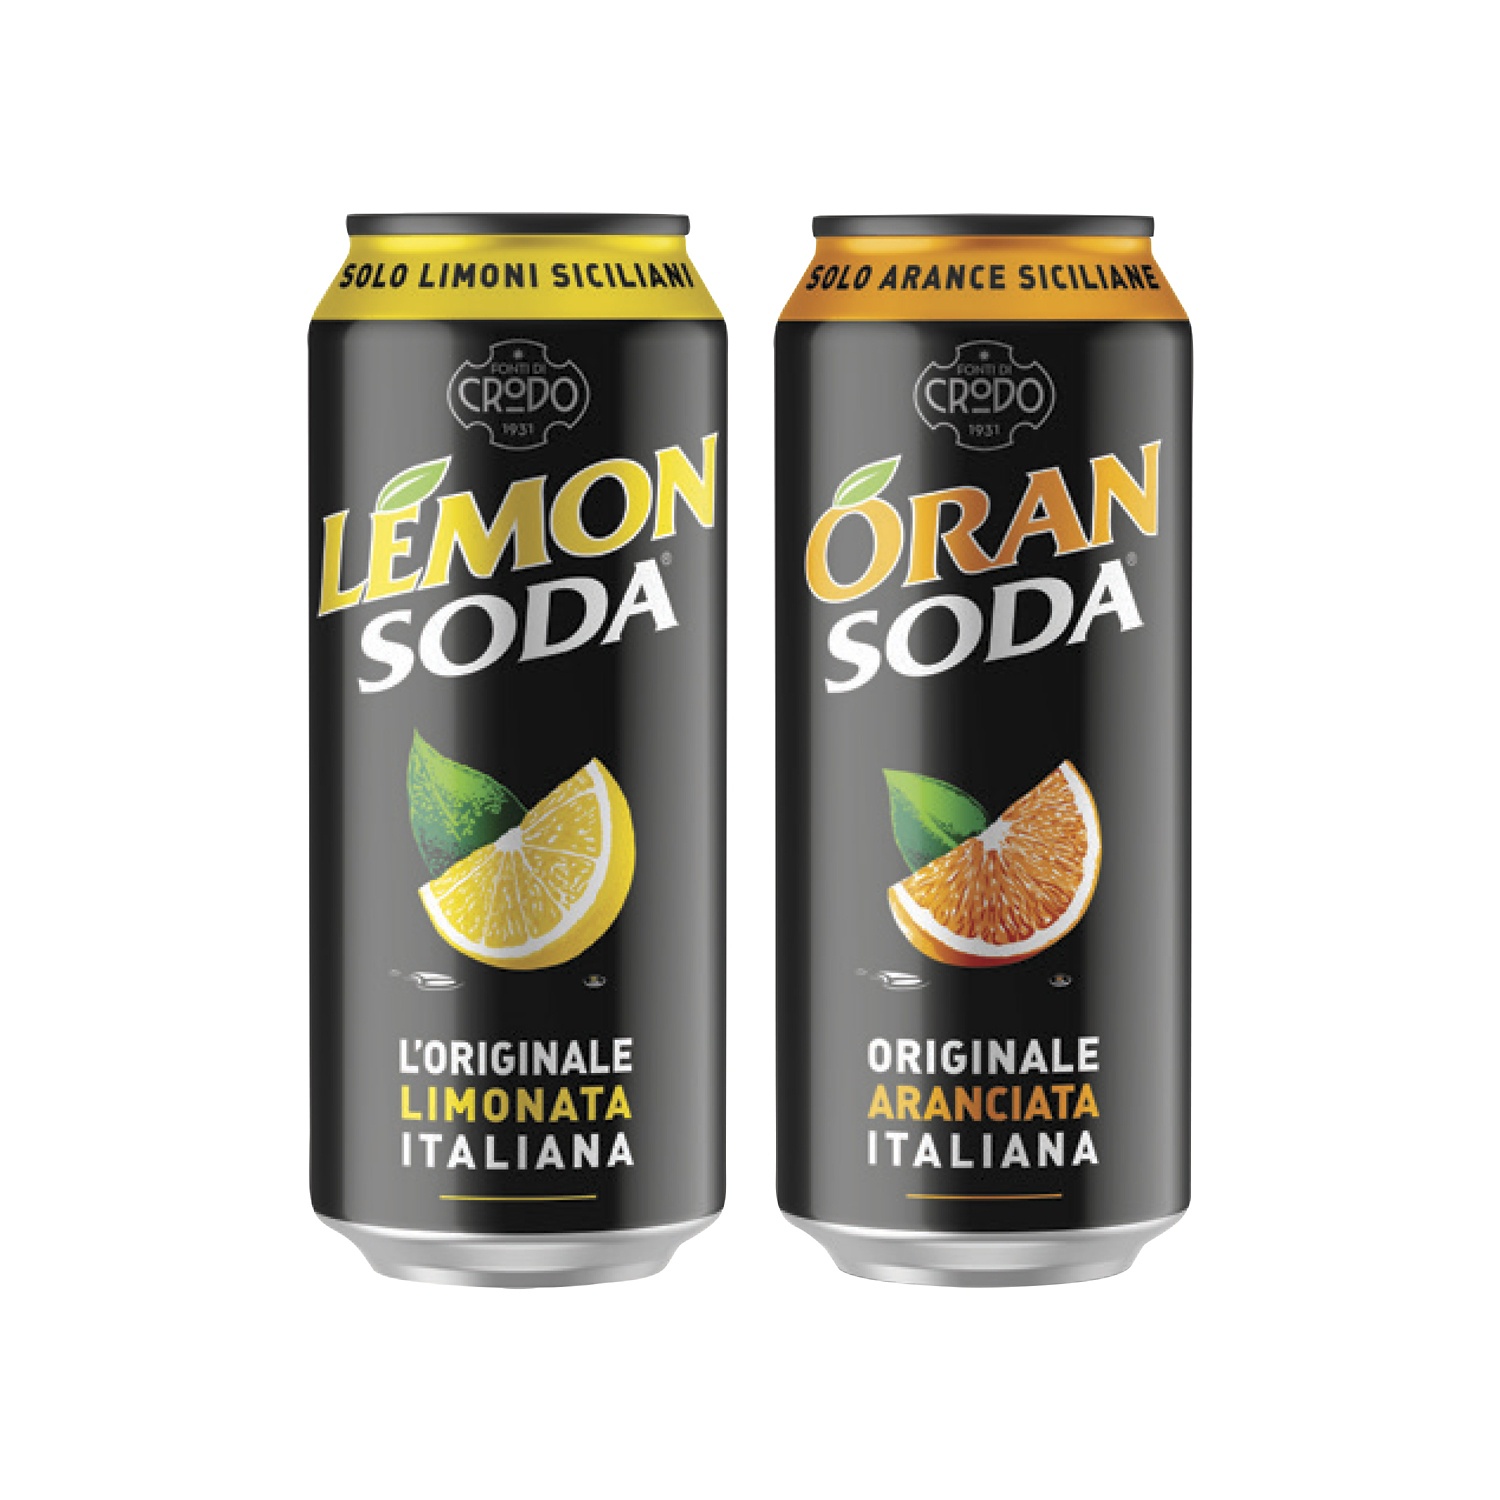 Lemonsoda/ Oransoda